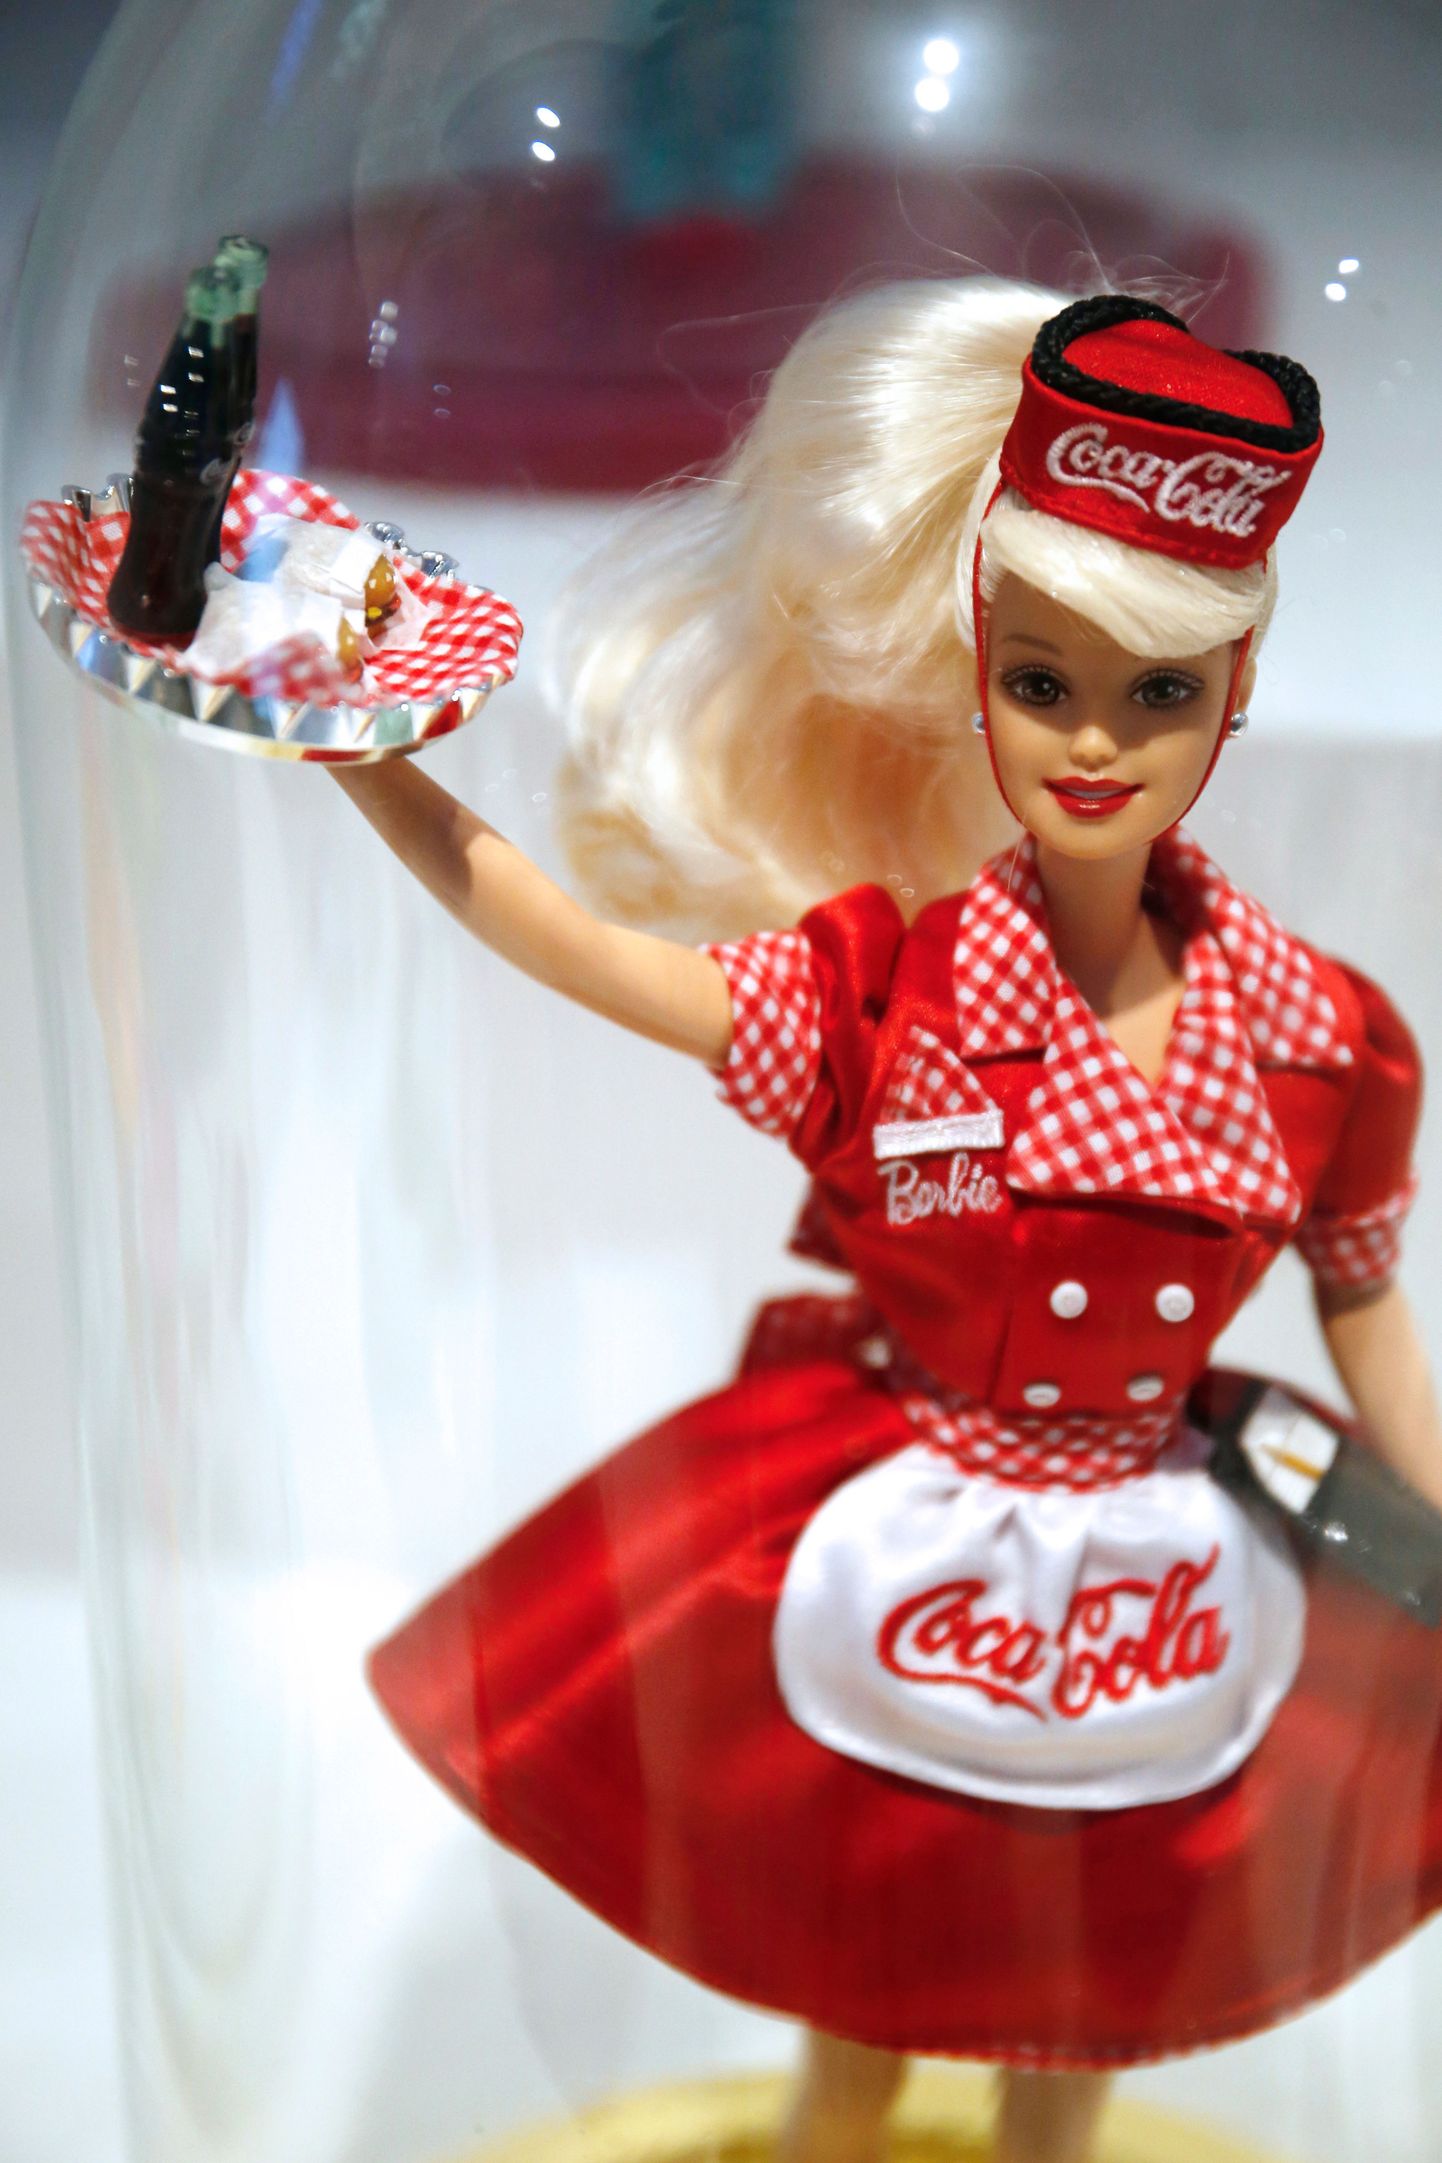 Lisaks astronaudi ja arstina töötamisele on Barbie ametis olnud ka kiirtoidurestoranis.